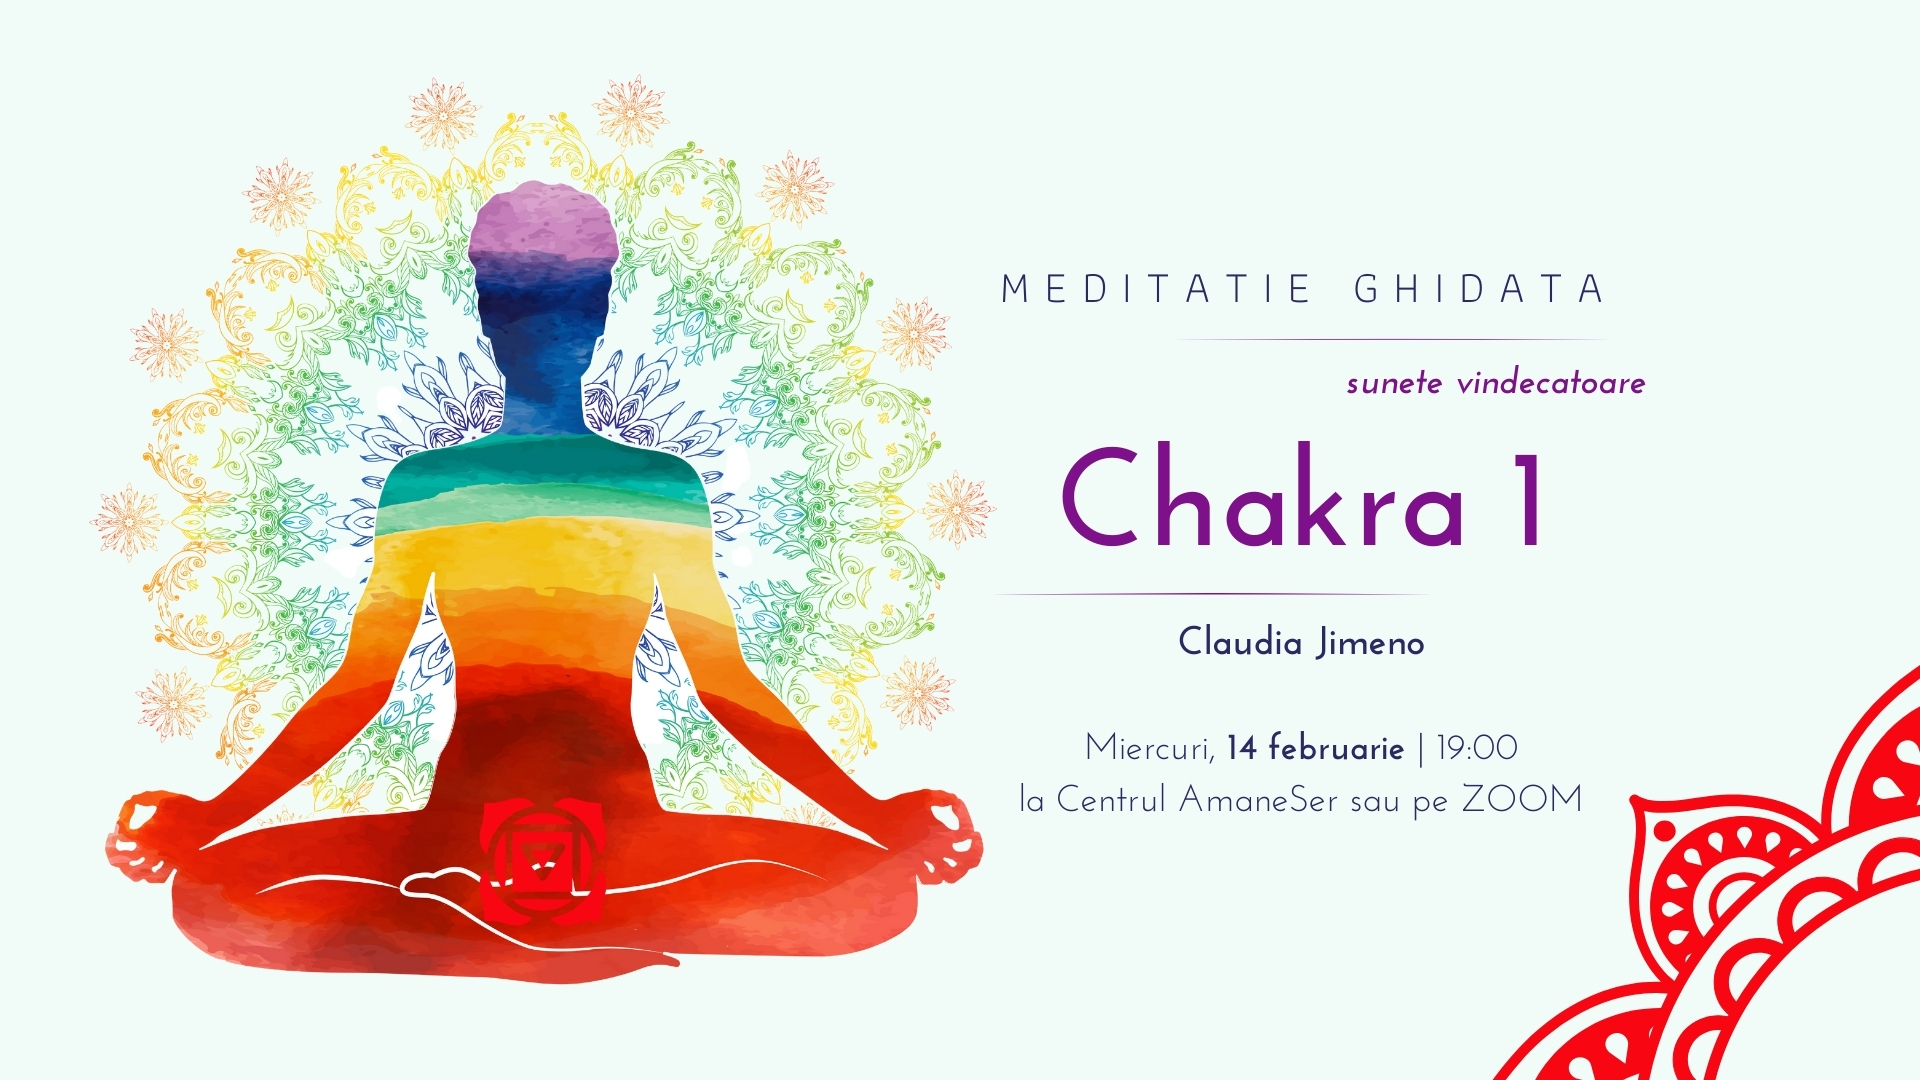 Meditatie ghidata cu sunete vindecatoare Chakra 1